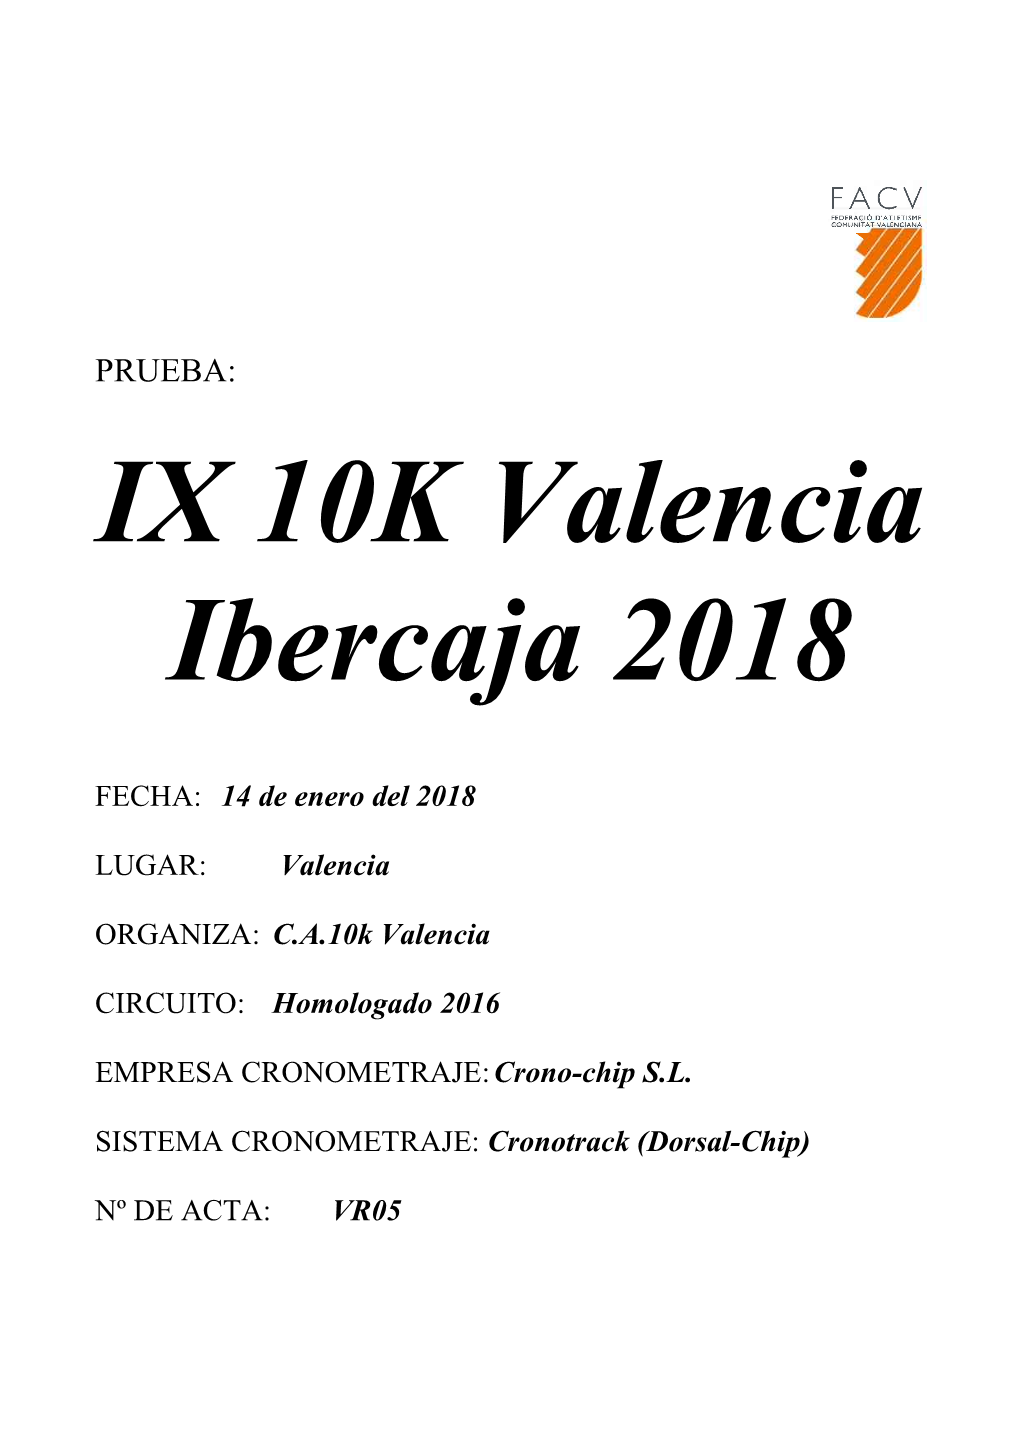 IX 10K Valencia Ibercaja 2018